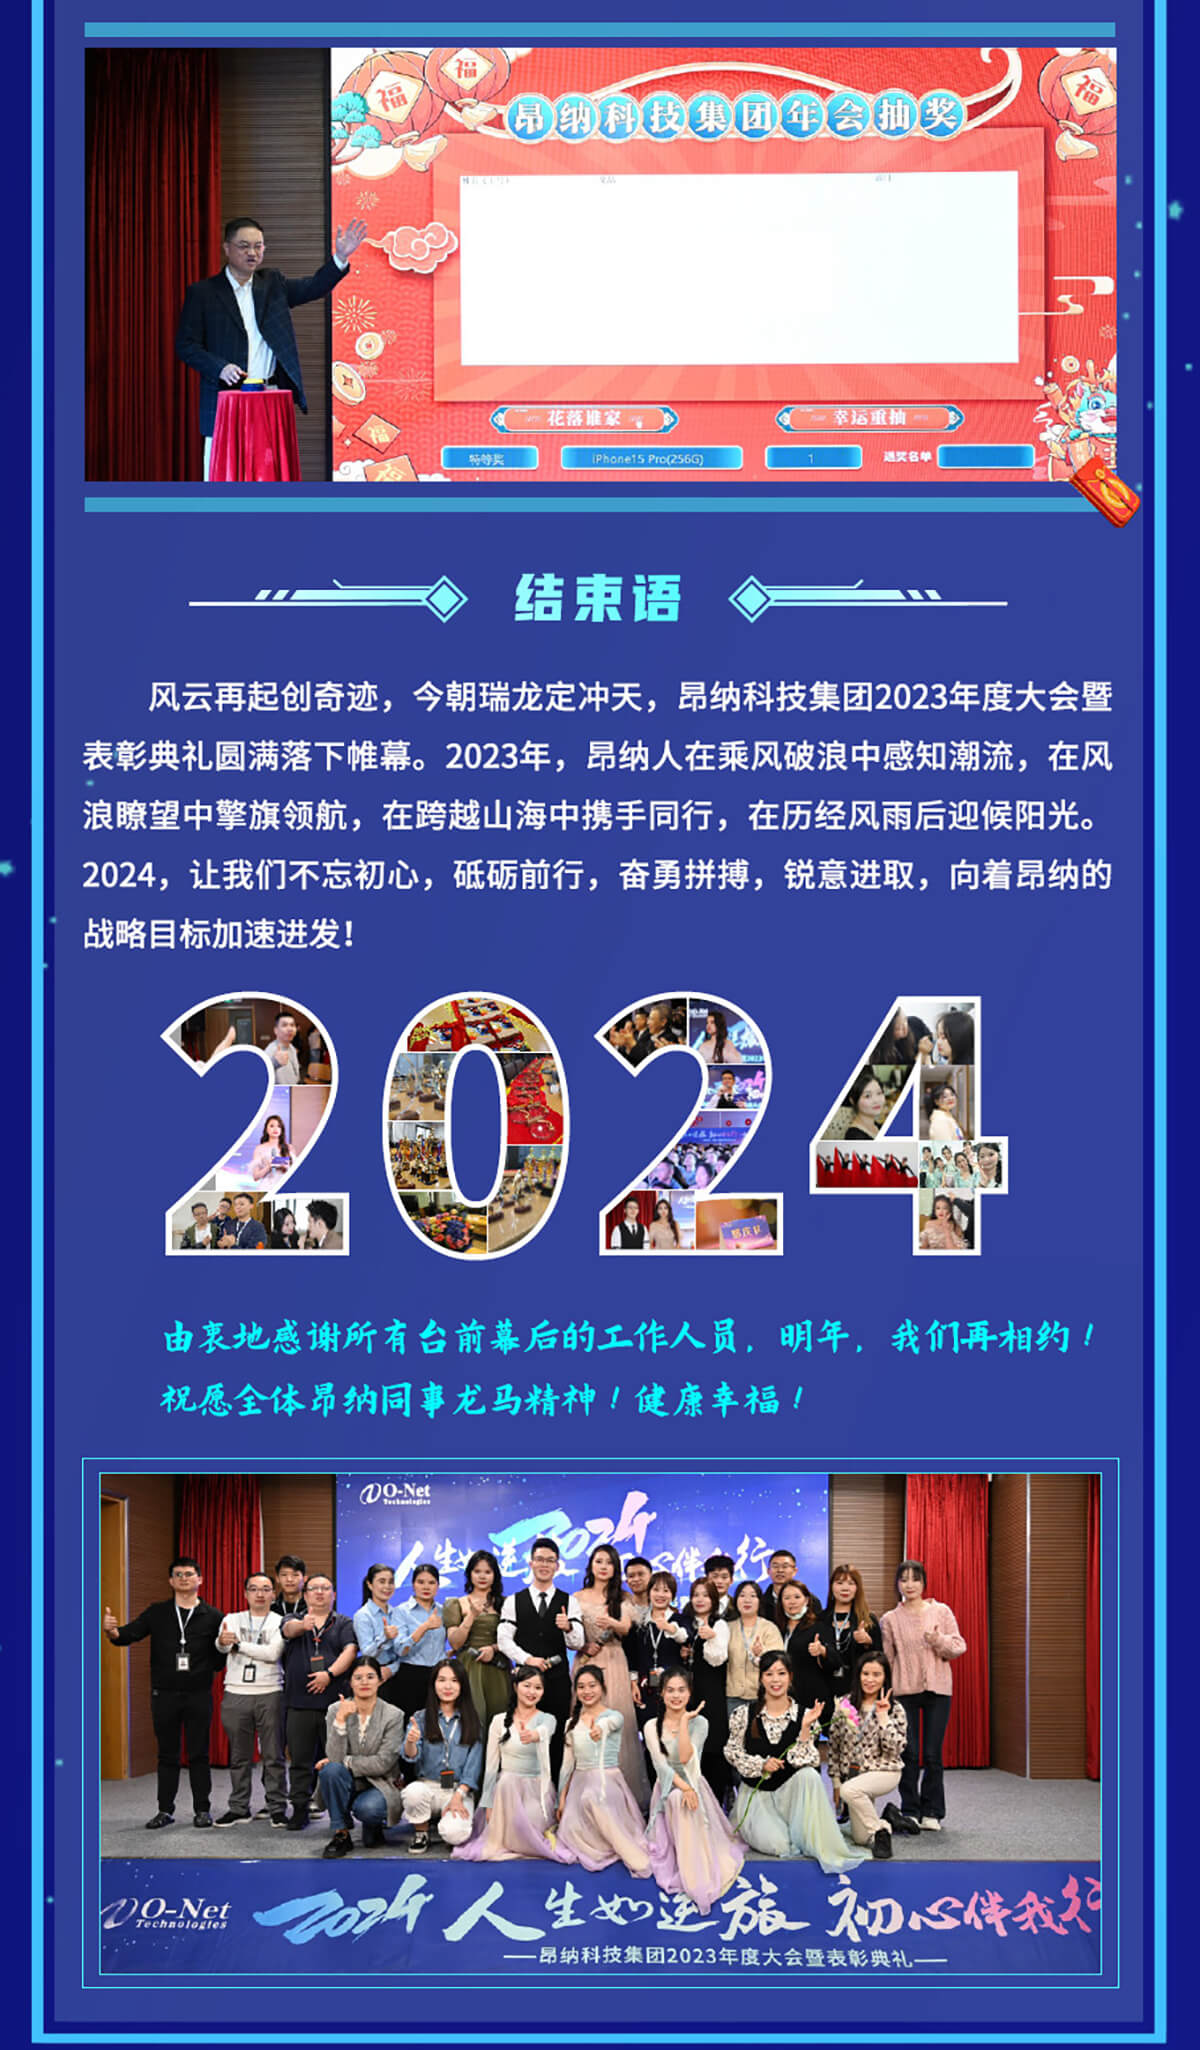 必赢网址bwi437集团2023年度大会暨表彰典礼精彩回顾